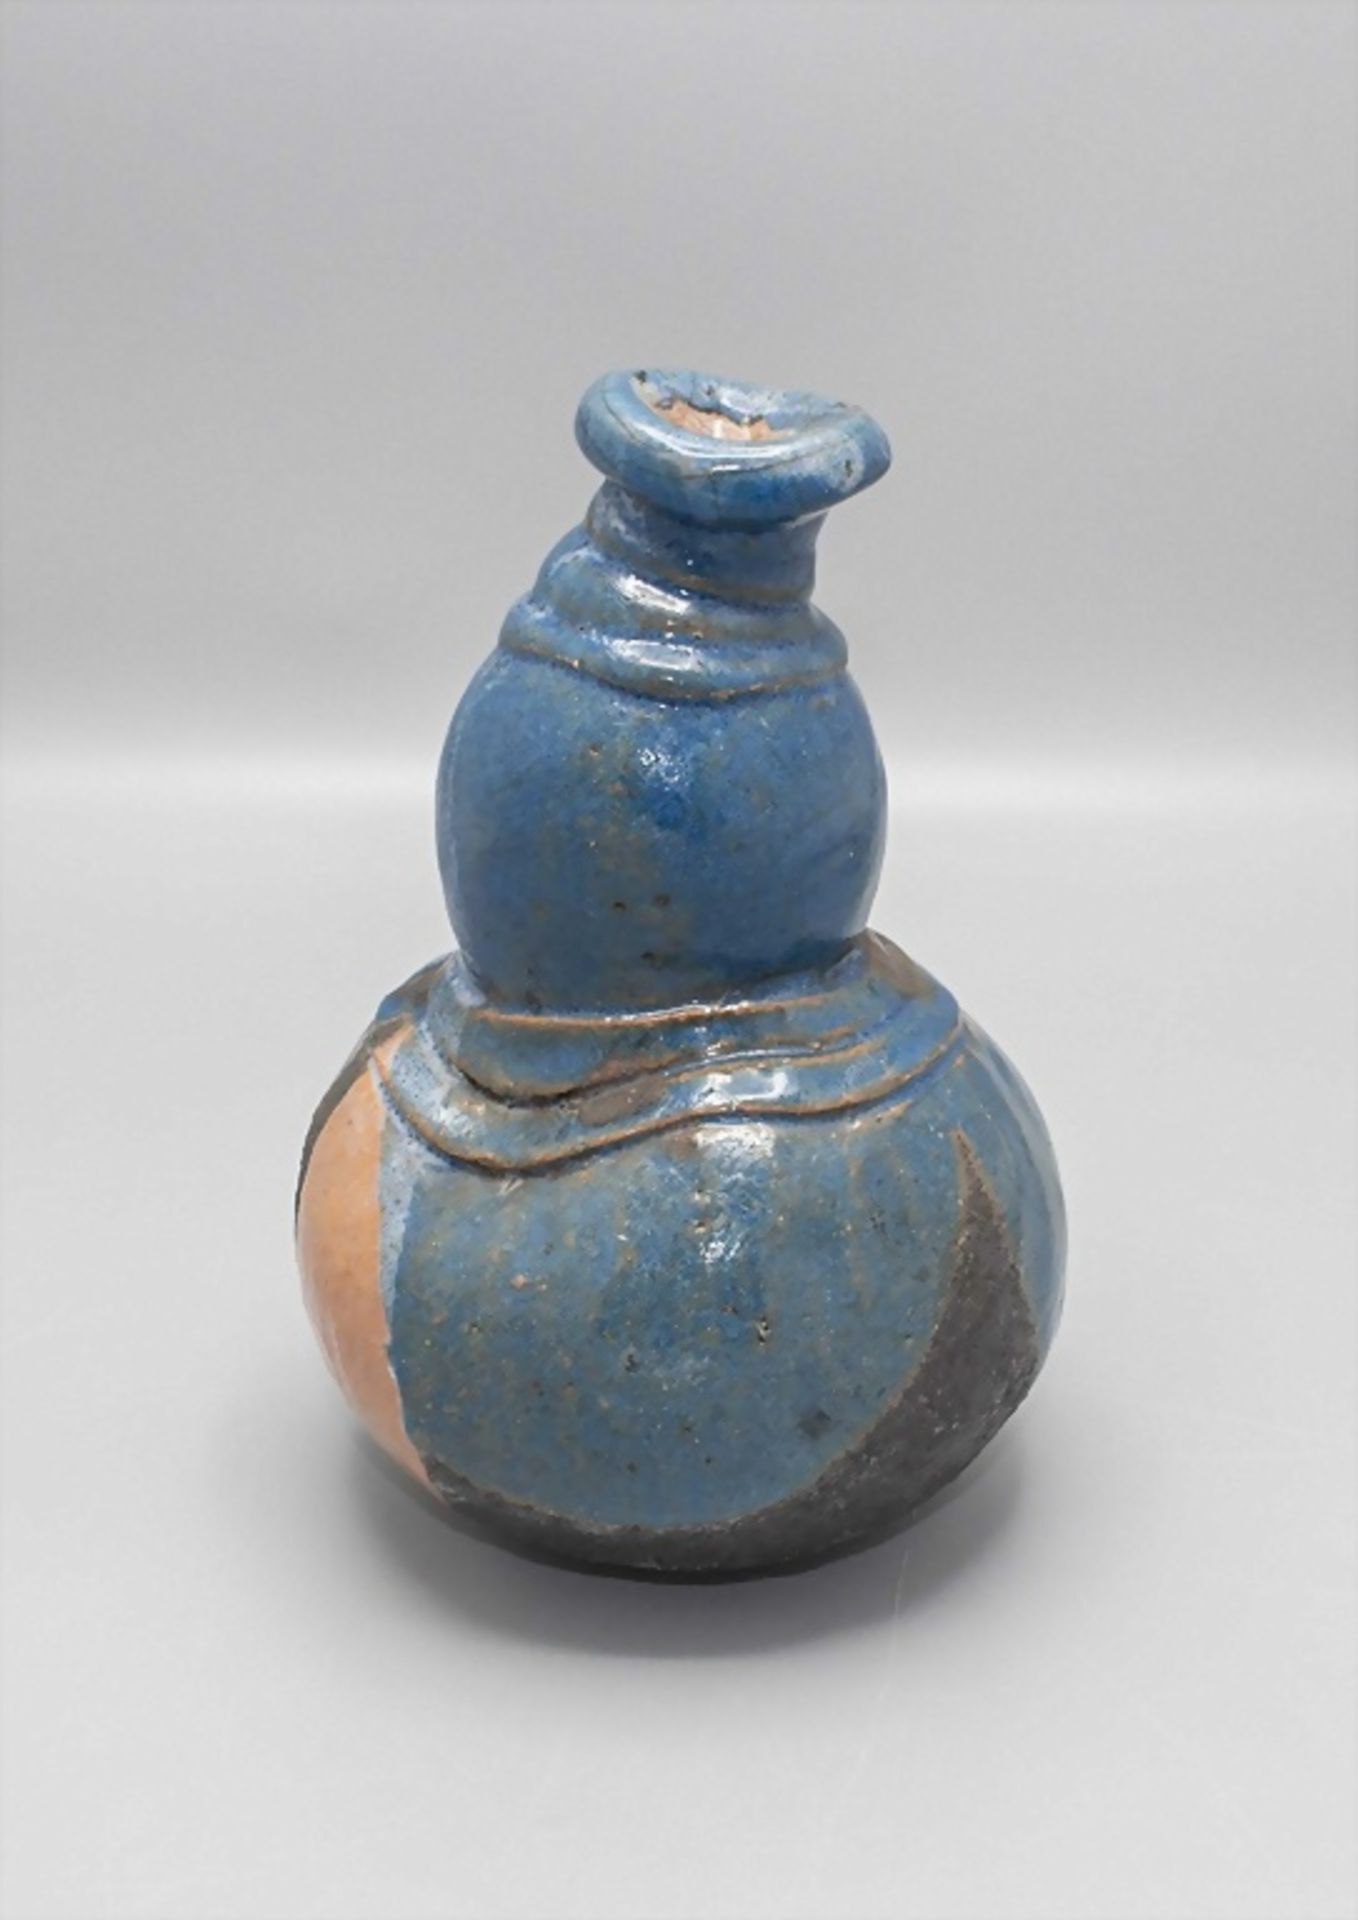 Vase Studiokeramik / A studio ceramic vase, 20. Jh. - Bild 2 aus 6